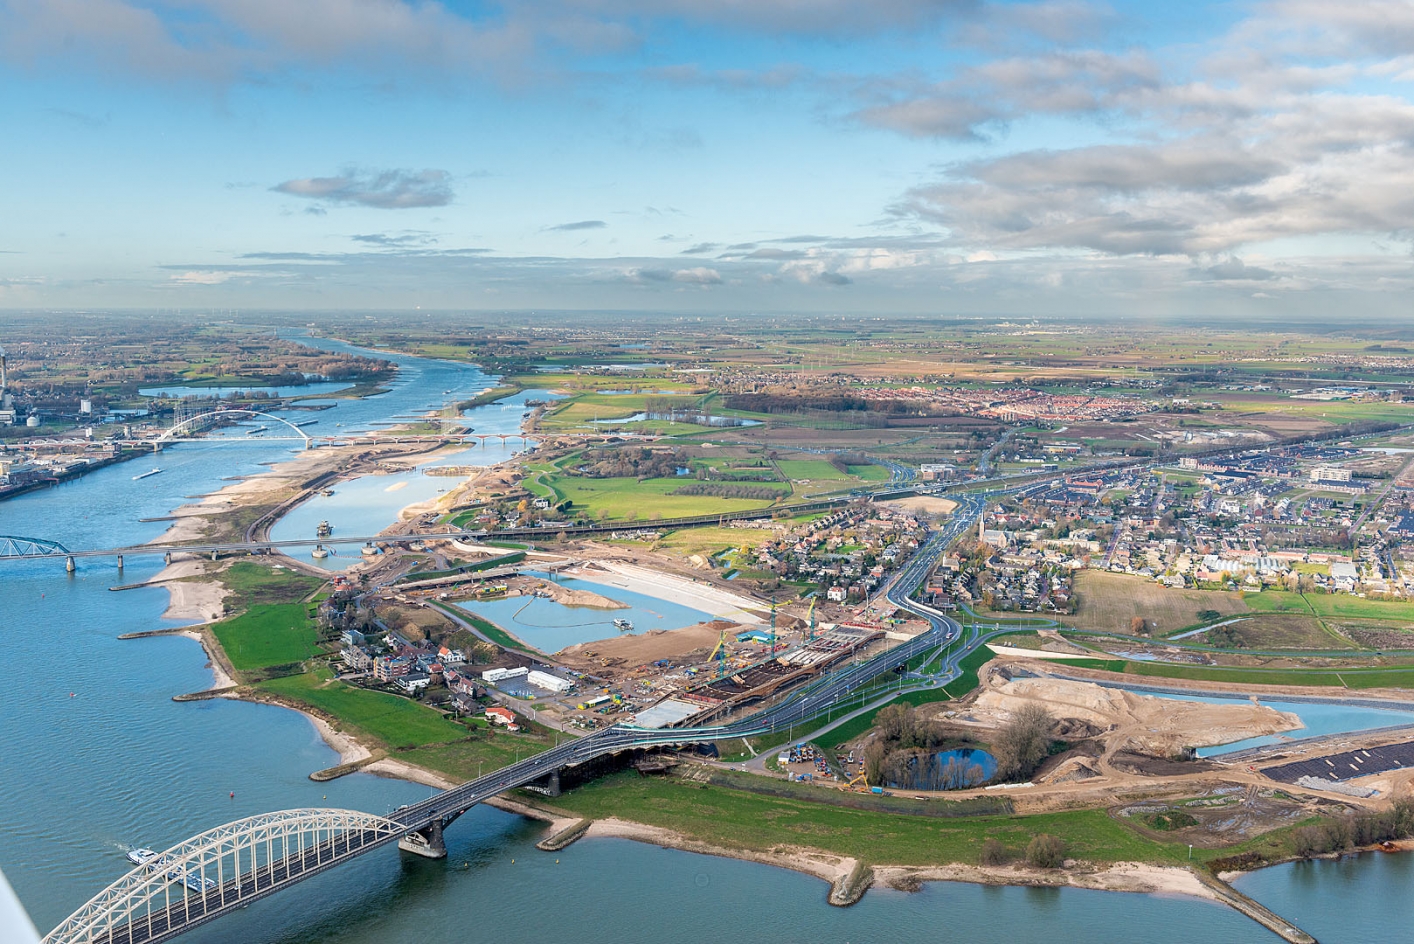 Spiegelwaal, Nijmegen, voorbeeld van complexe regionale opgaven: verstedelijking, waterveiligheid, infrastructuur en kwaliteit landschap